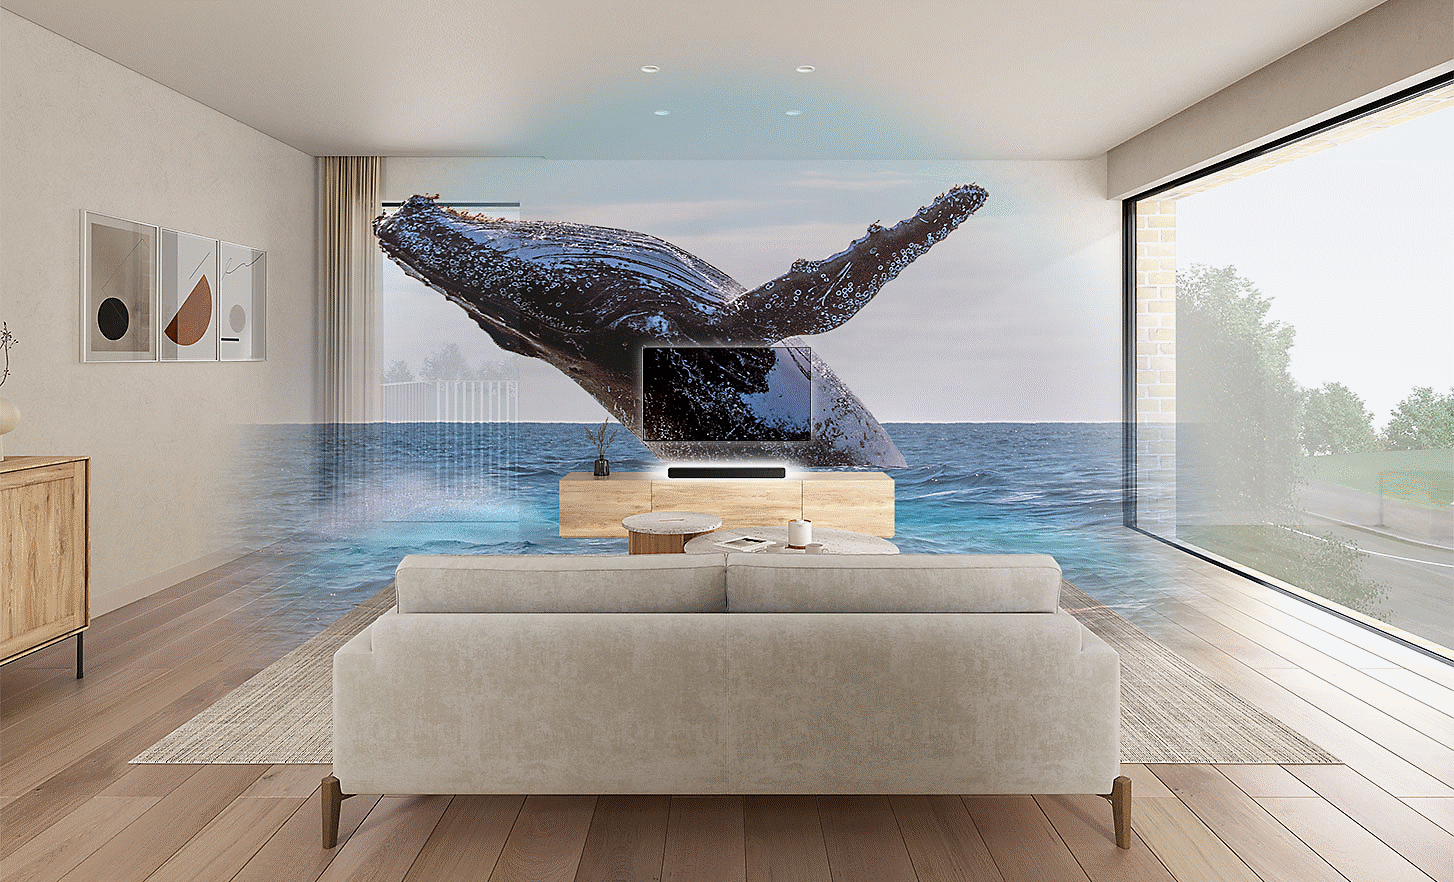 Abbildung eines Wohnzimmers mit einem Fernseher und einer HT-S2000 Soundbar in der Mitte, darüber ein mit einem Wasserzeichen versehenes Bild eines Wals